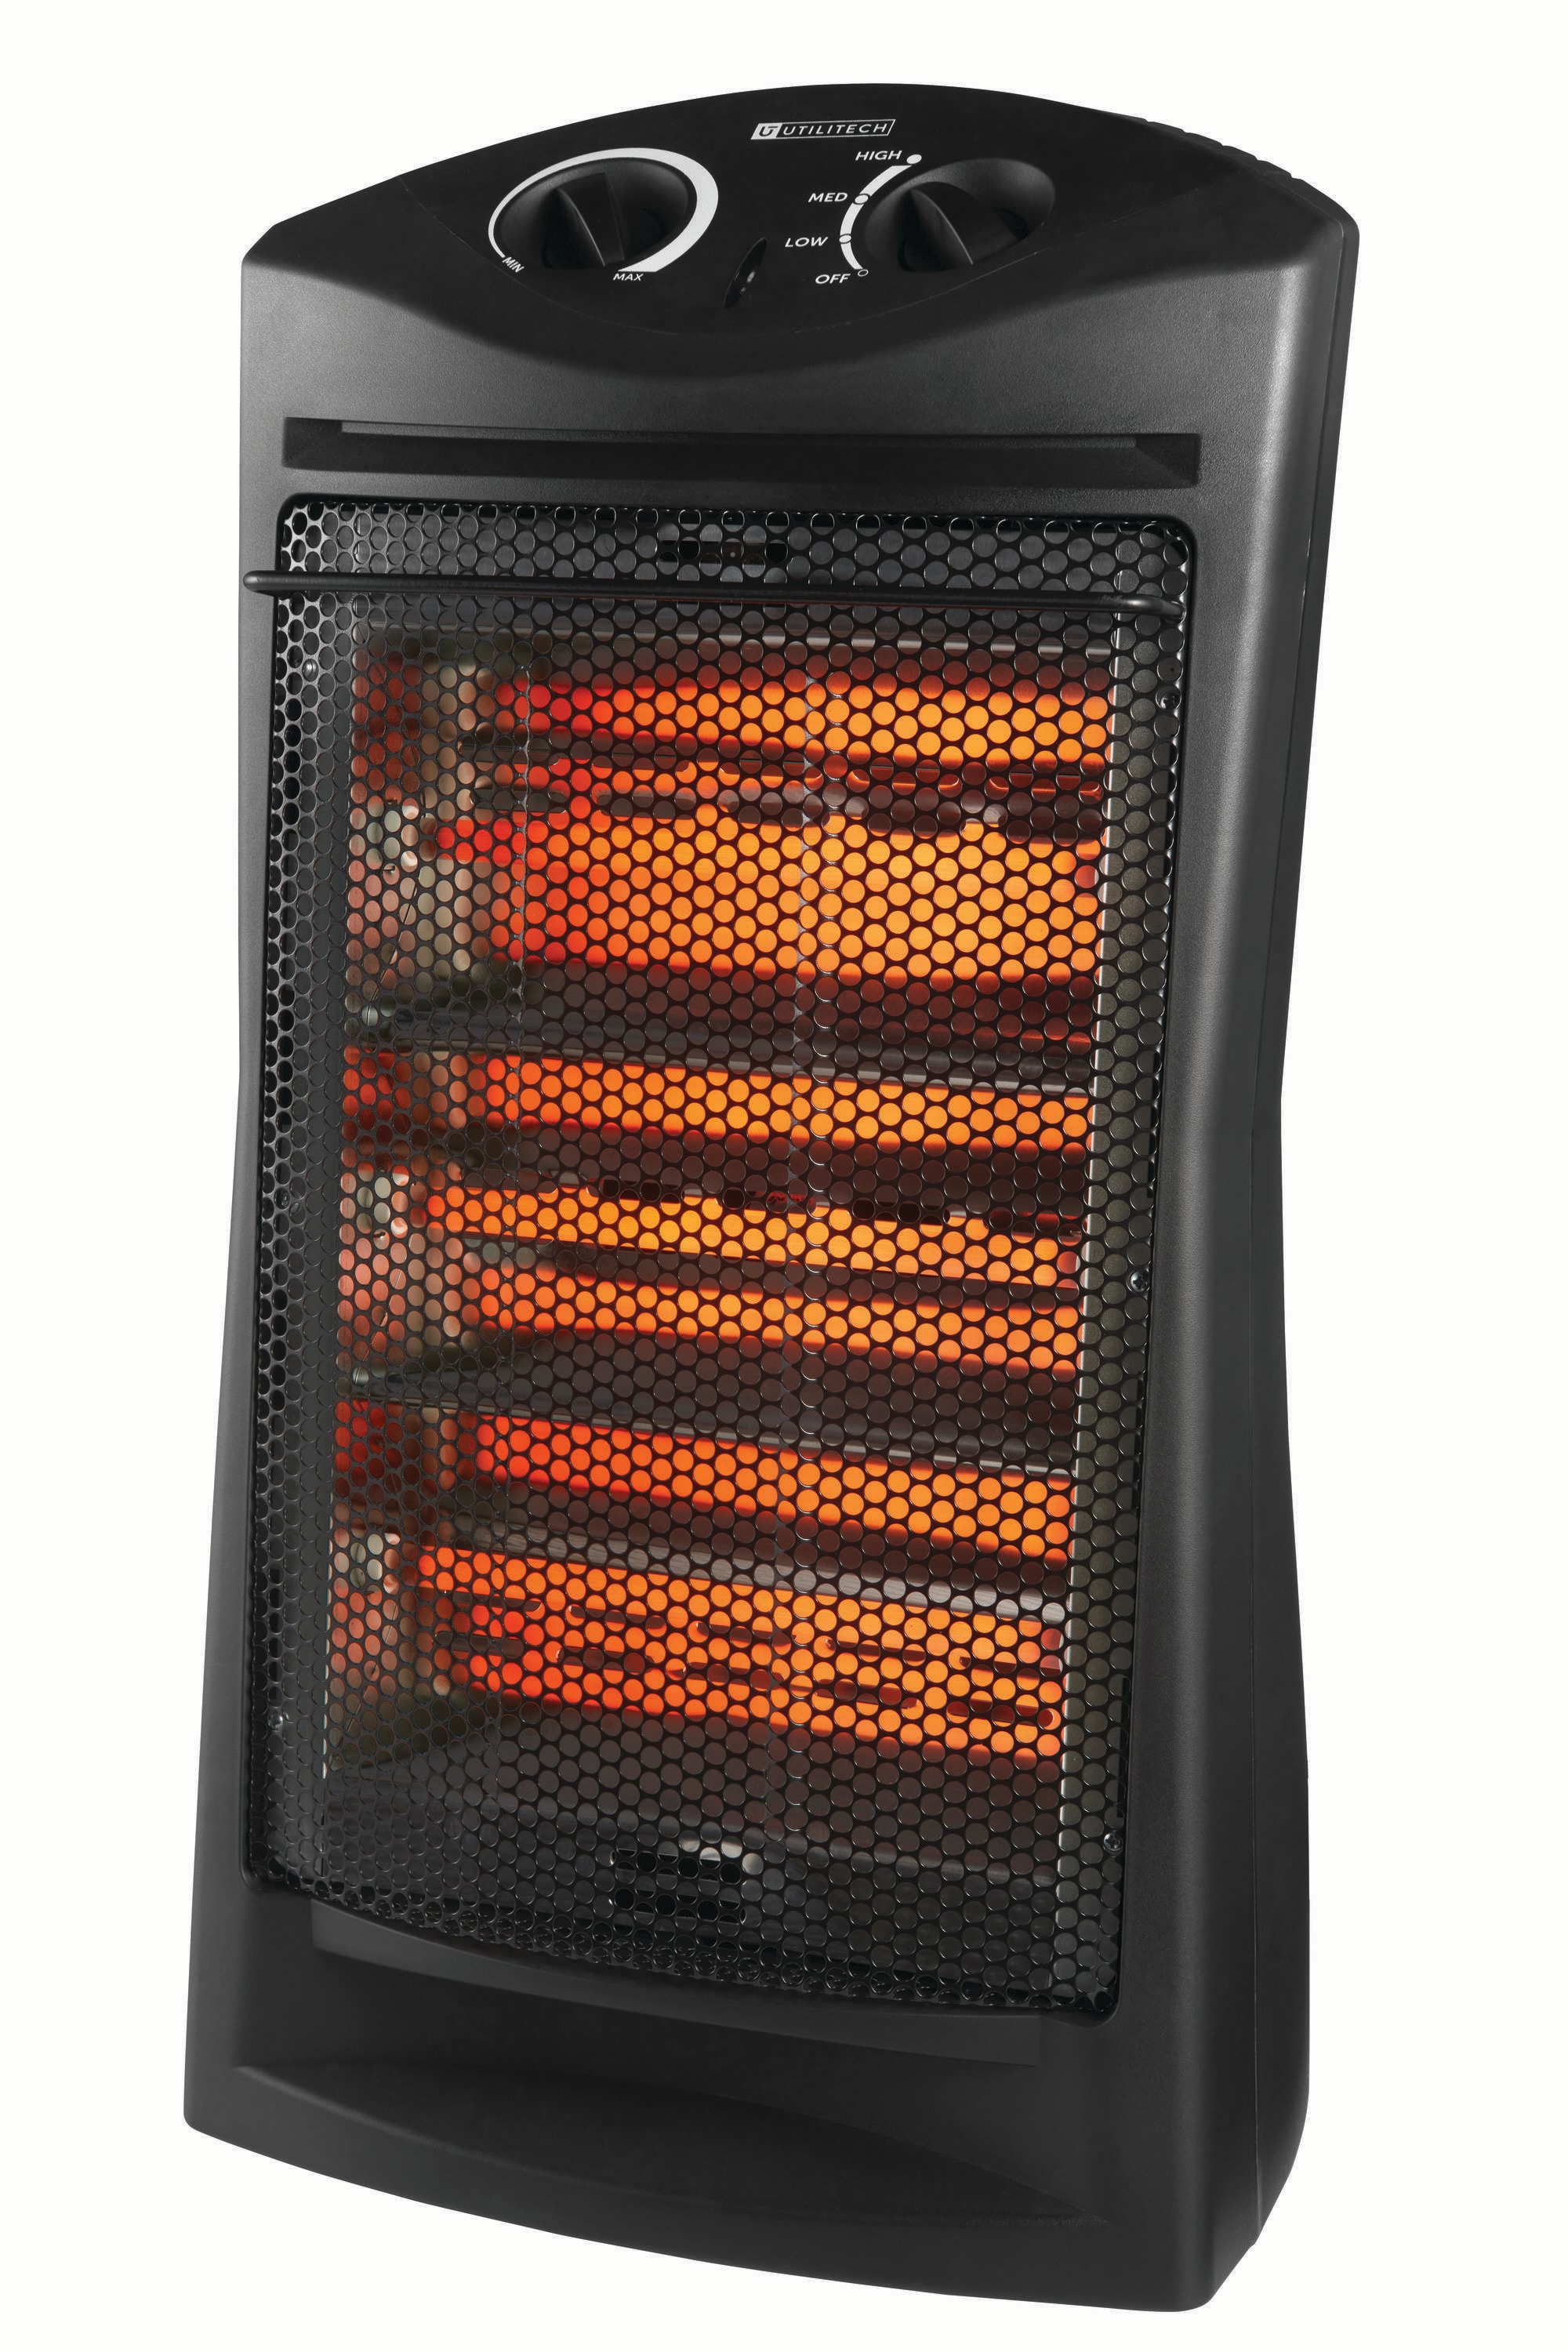 BLACK+DECKER Infrared Quartz Tower Manual Control Indoor HeaterBlack